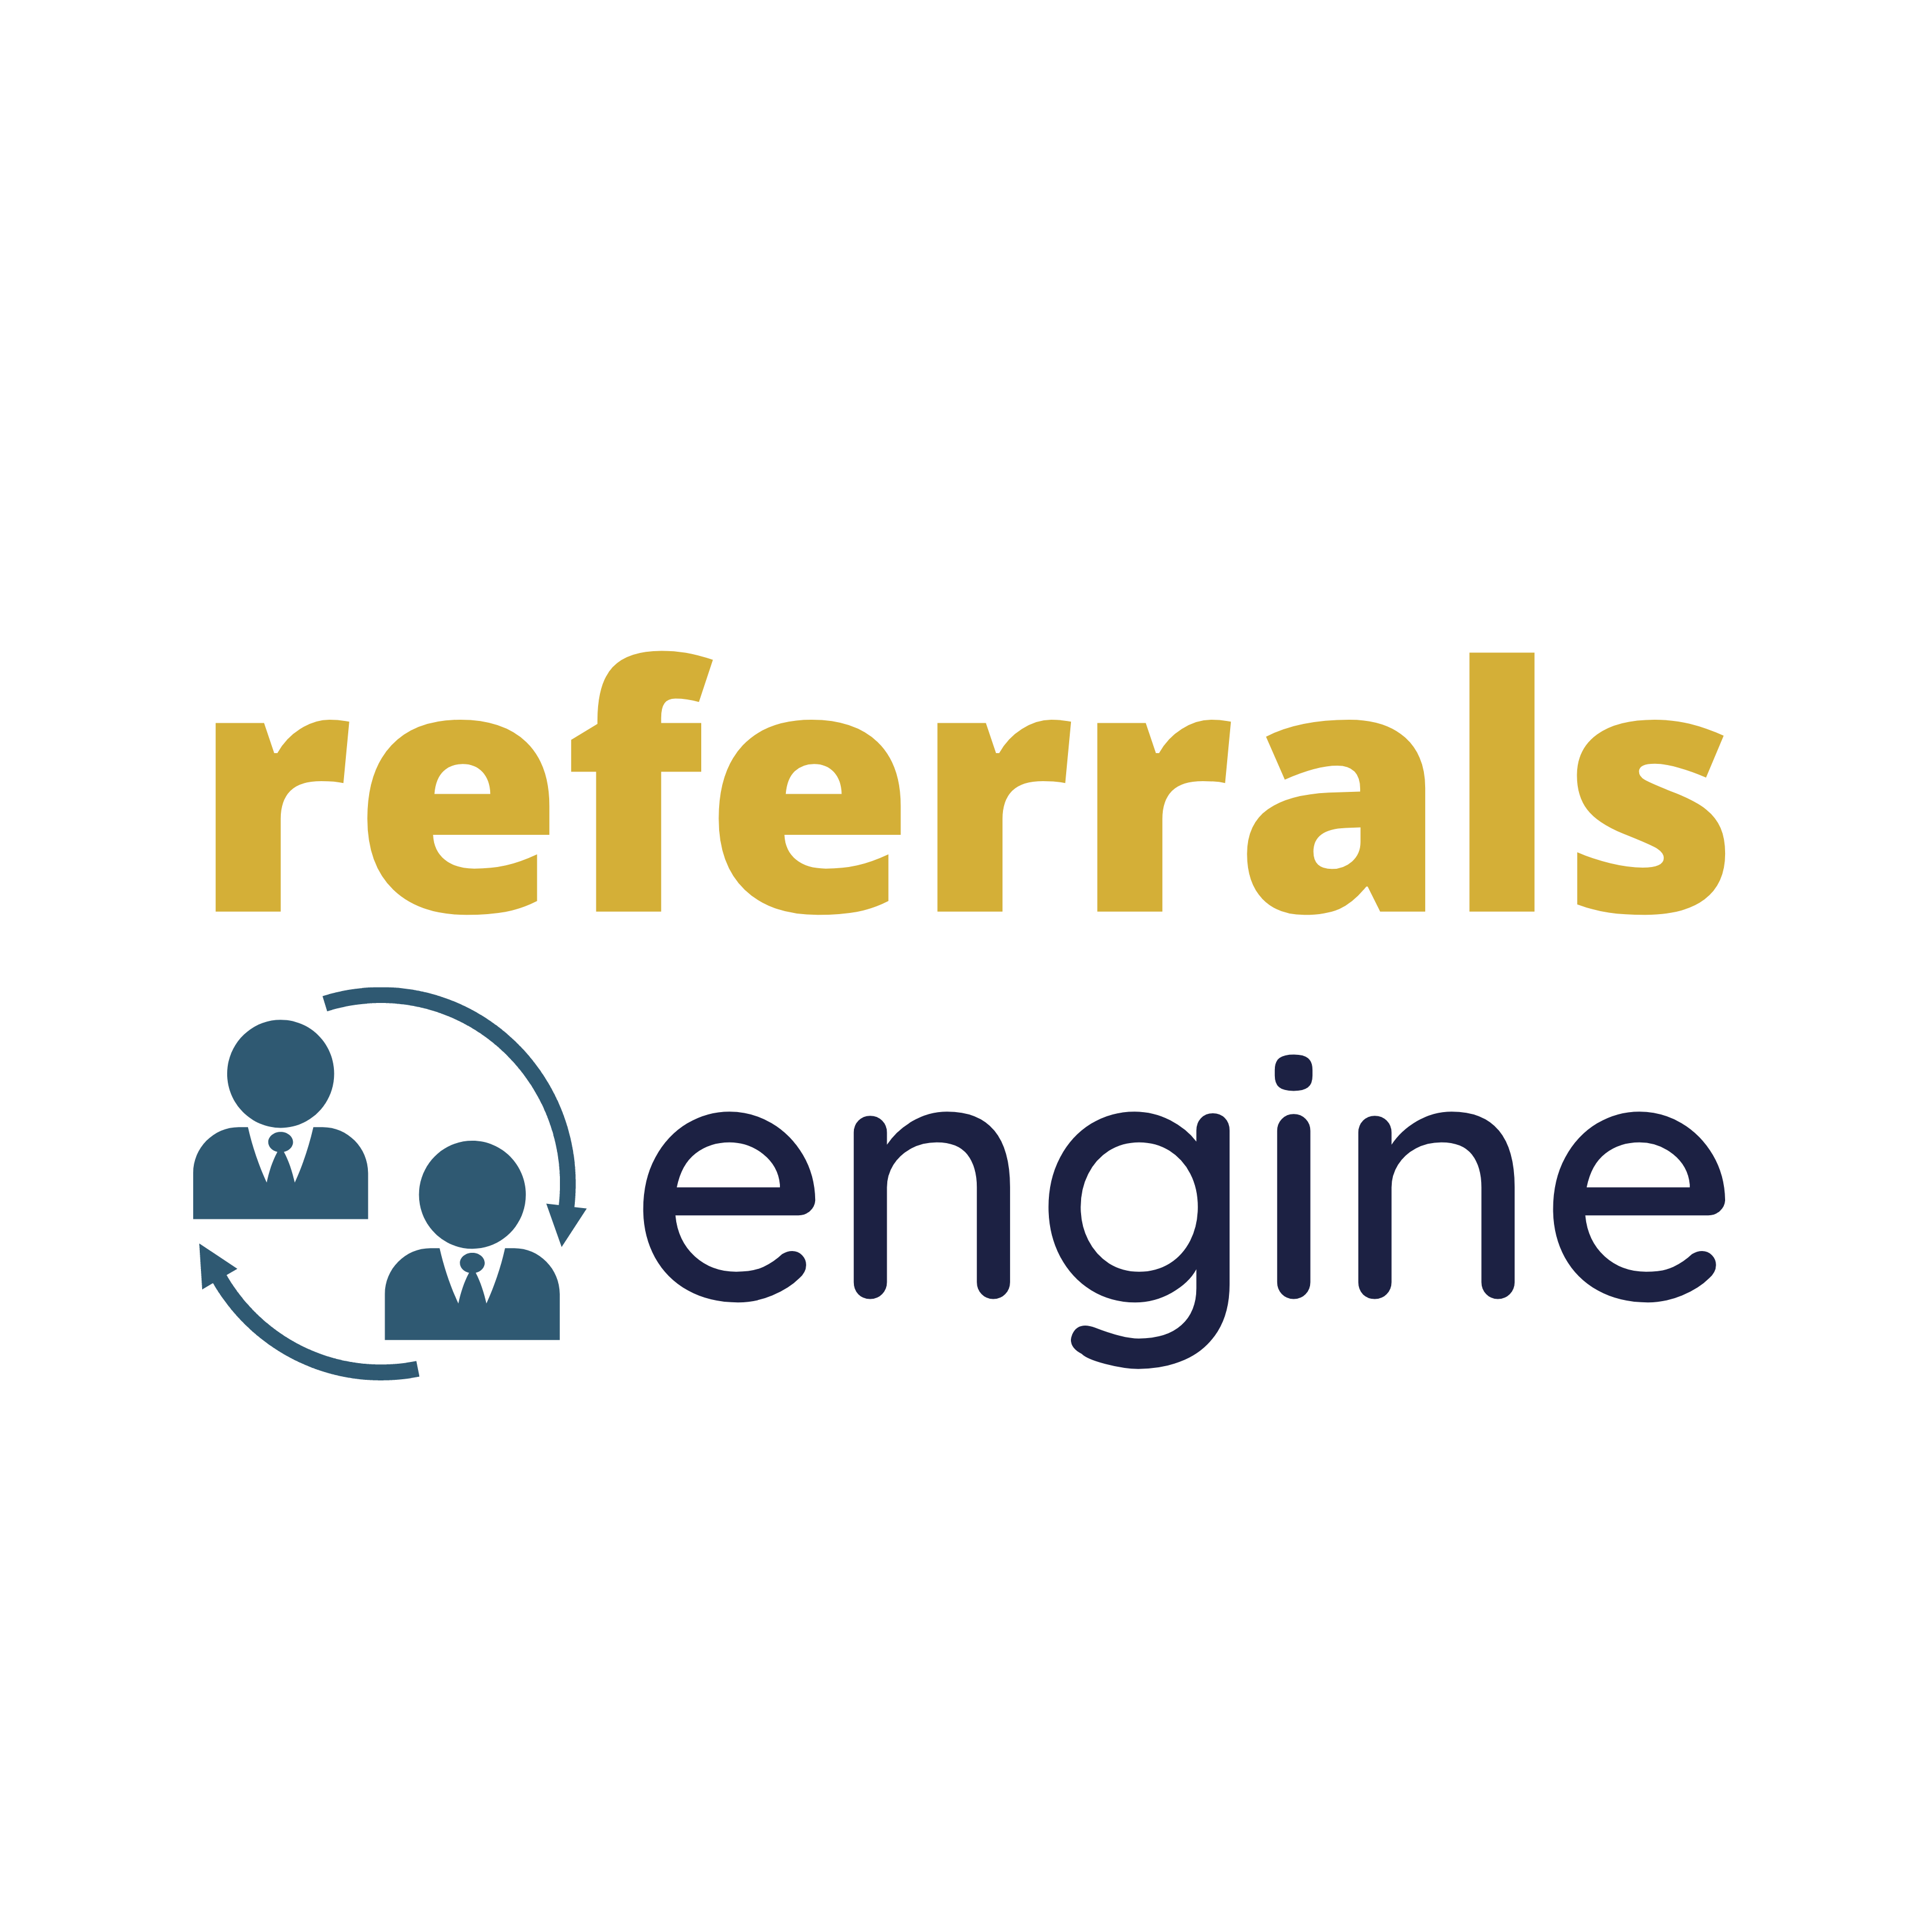 Referrals Engine